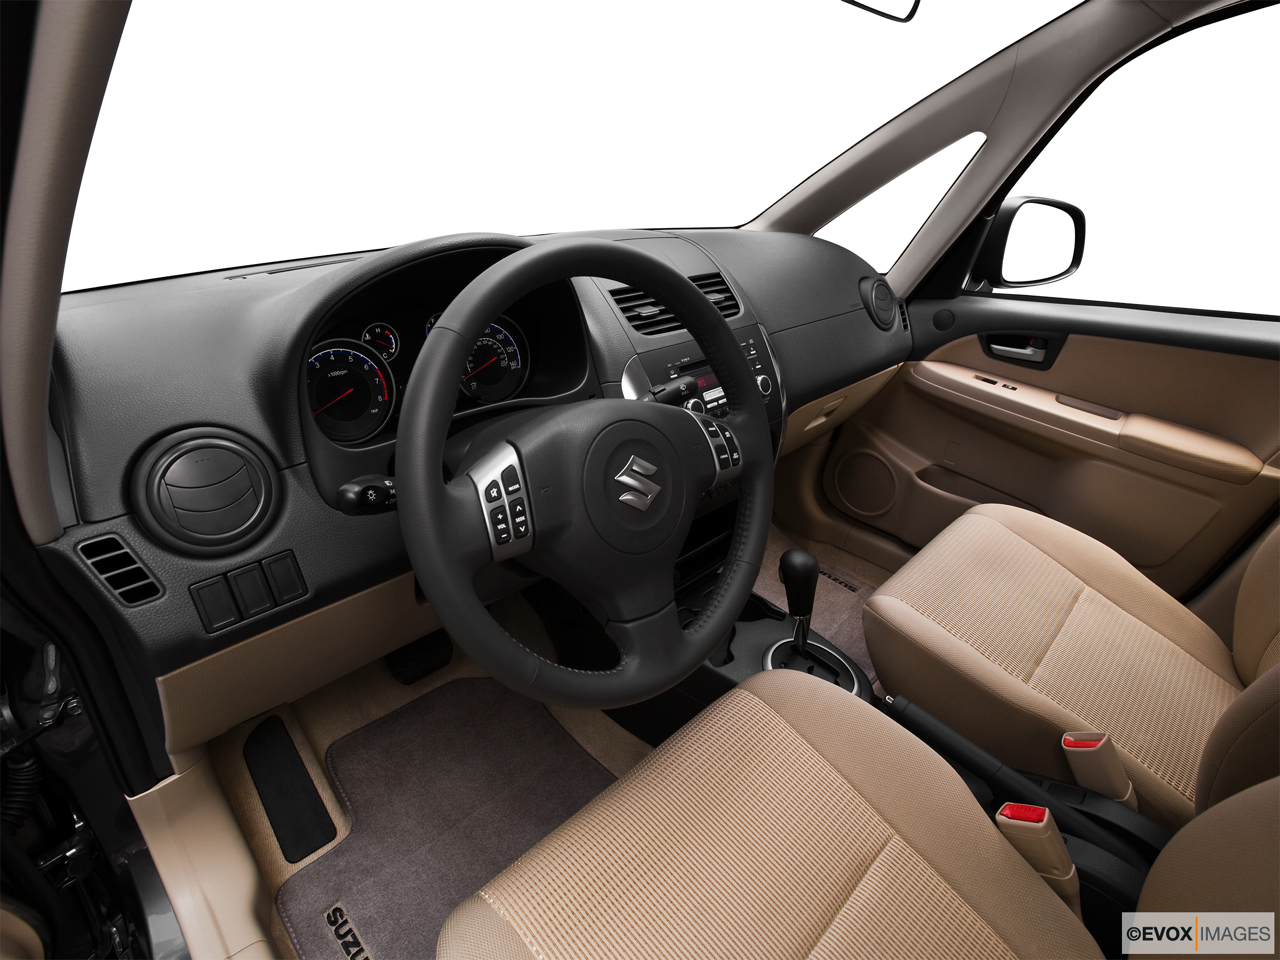 2010 Suzuki SX4 LE Popular Interior Hero (driver's side). 